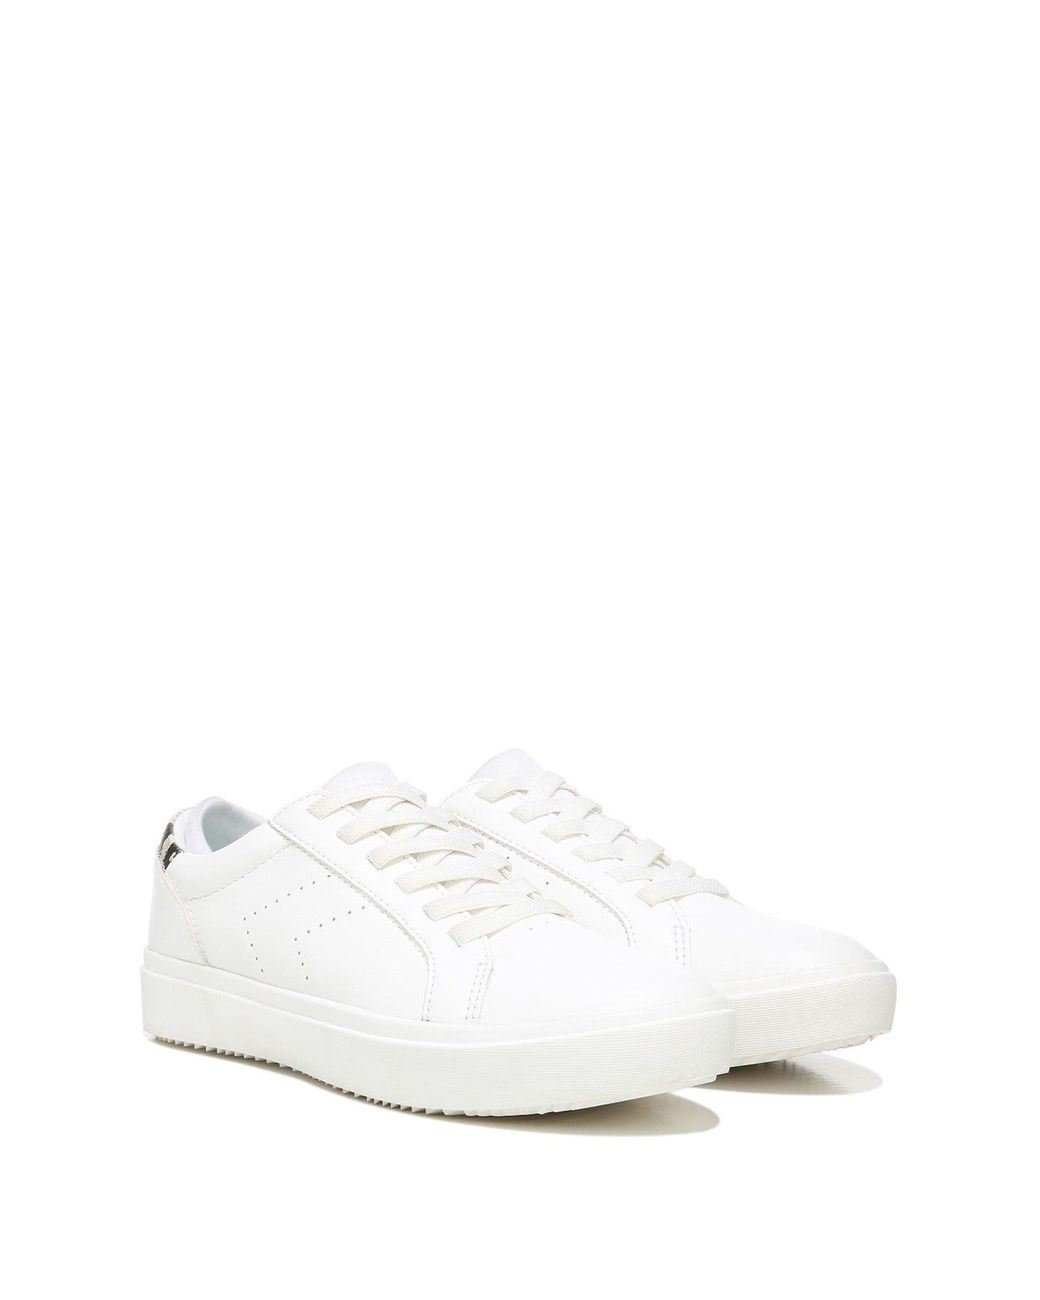 Dr. Scholls Wink Lace Sneaker in White | Lyst